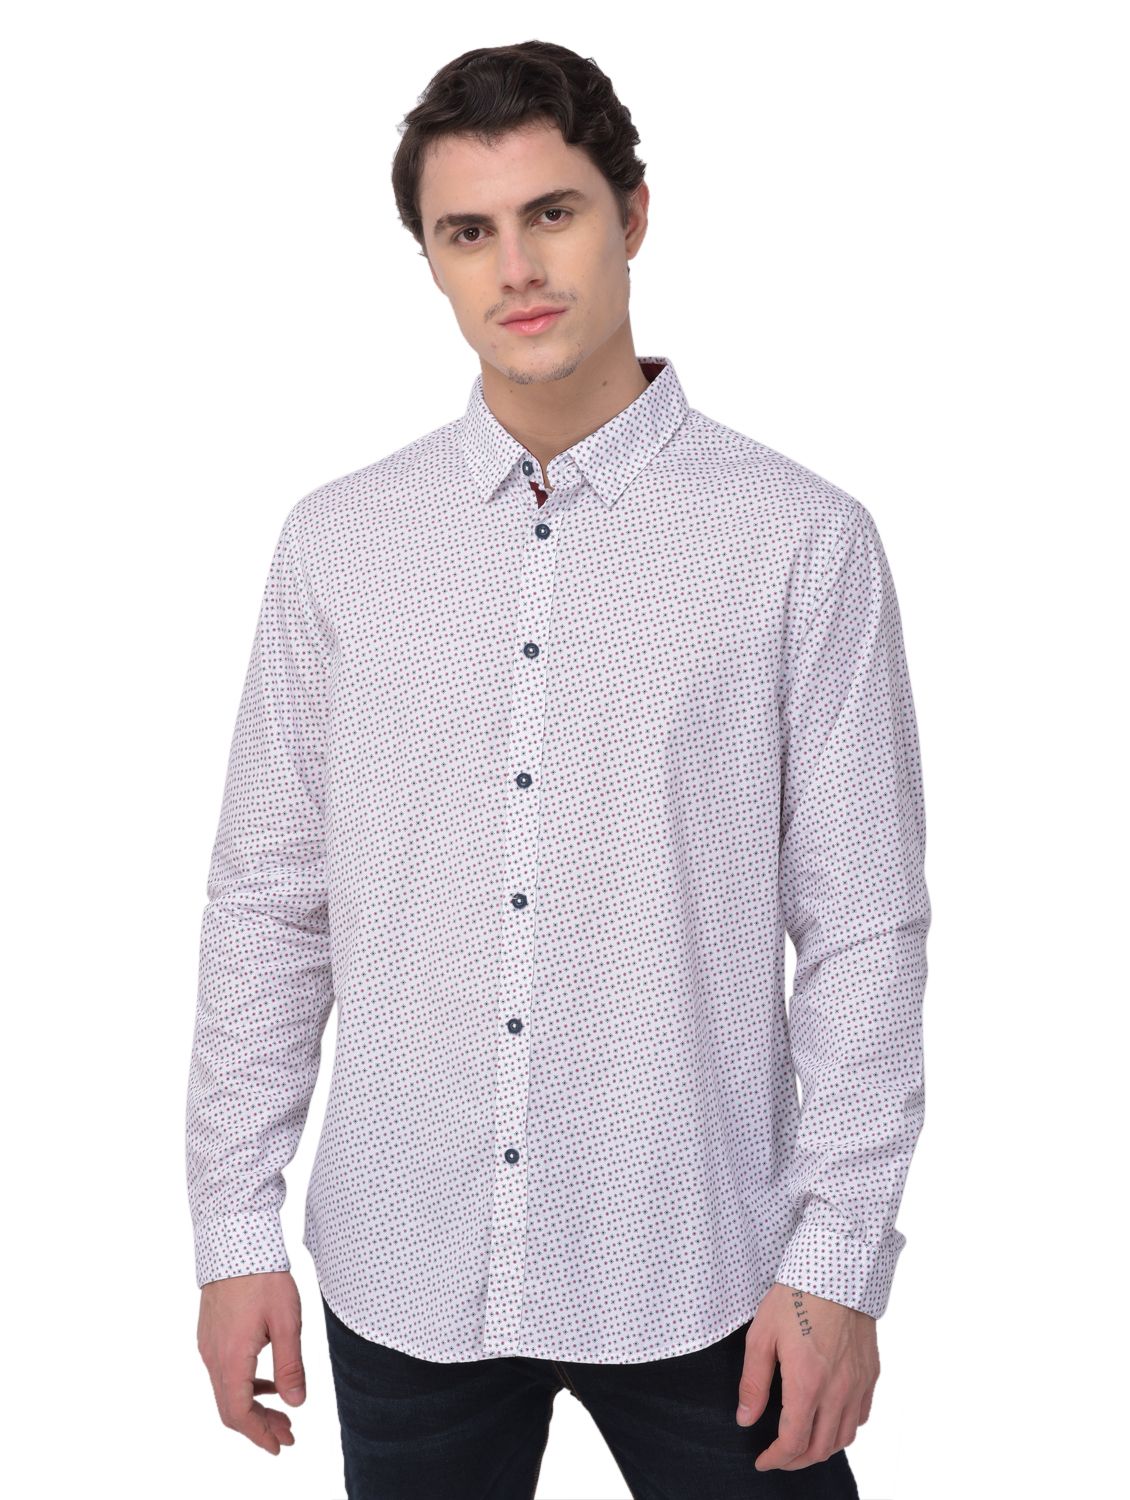 White/wine full sleeves shirt for men